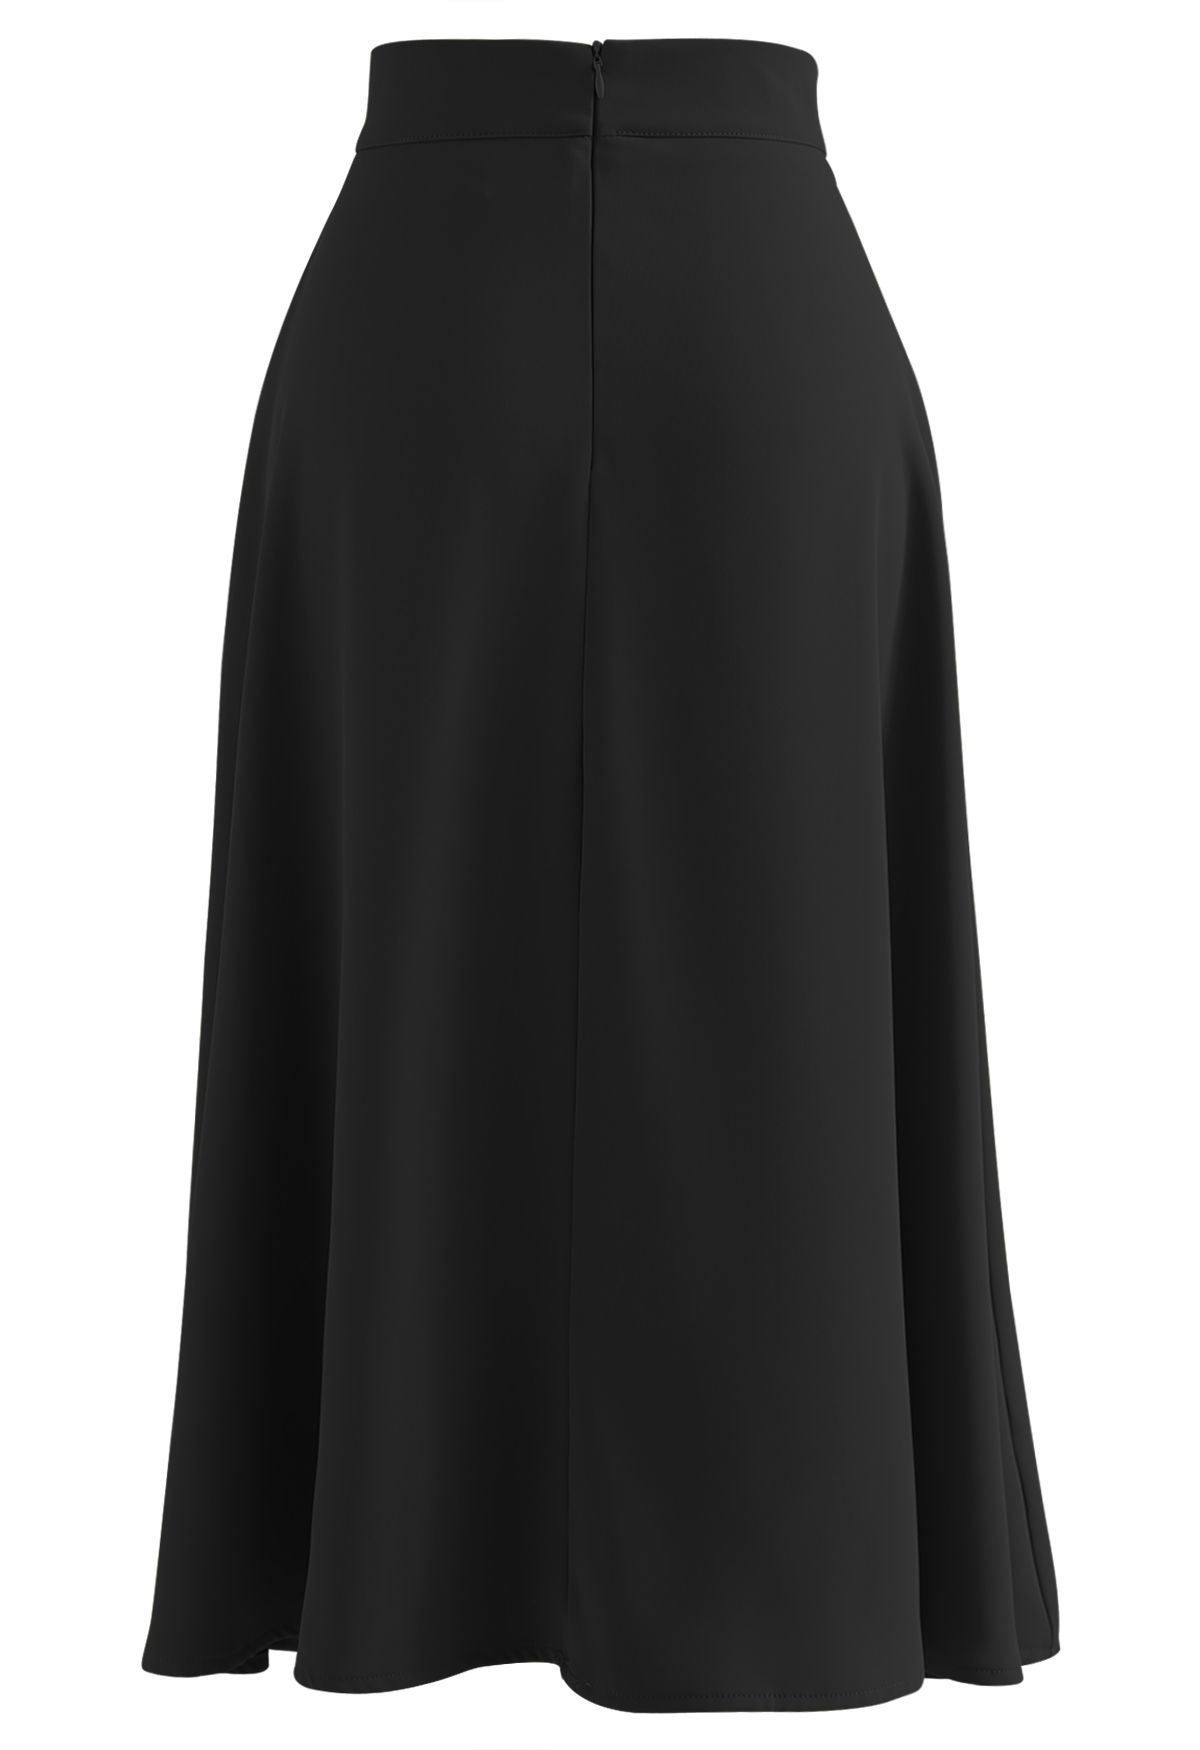 Classy Pearl Trim Flare Midi Skirt in Black